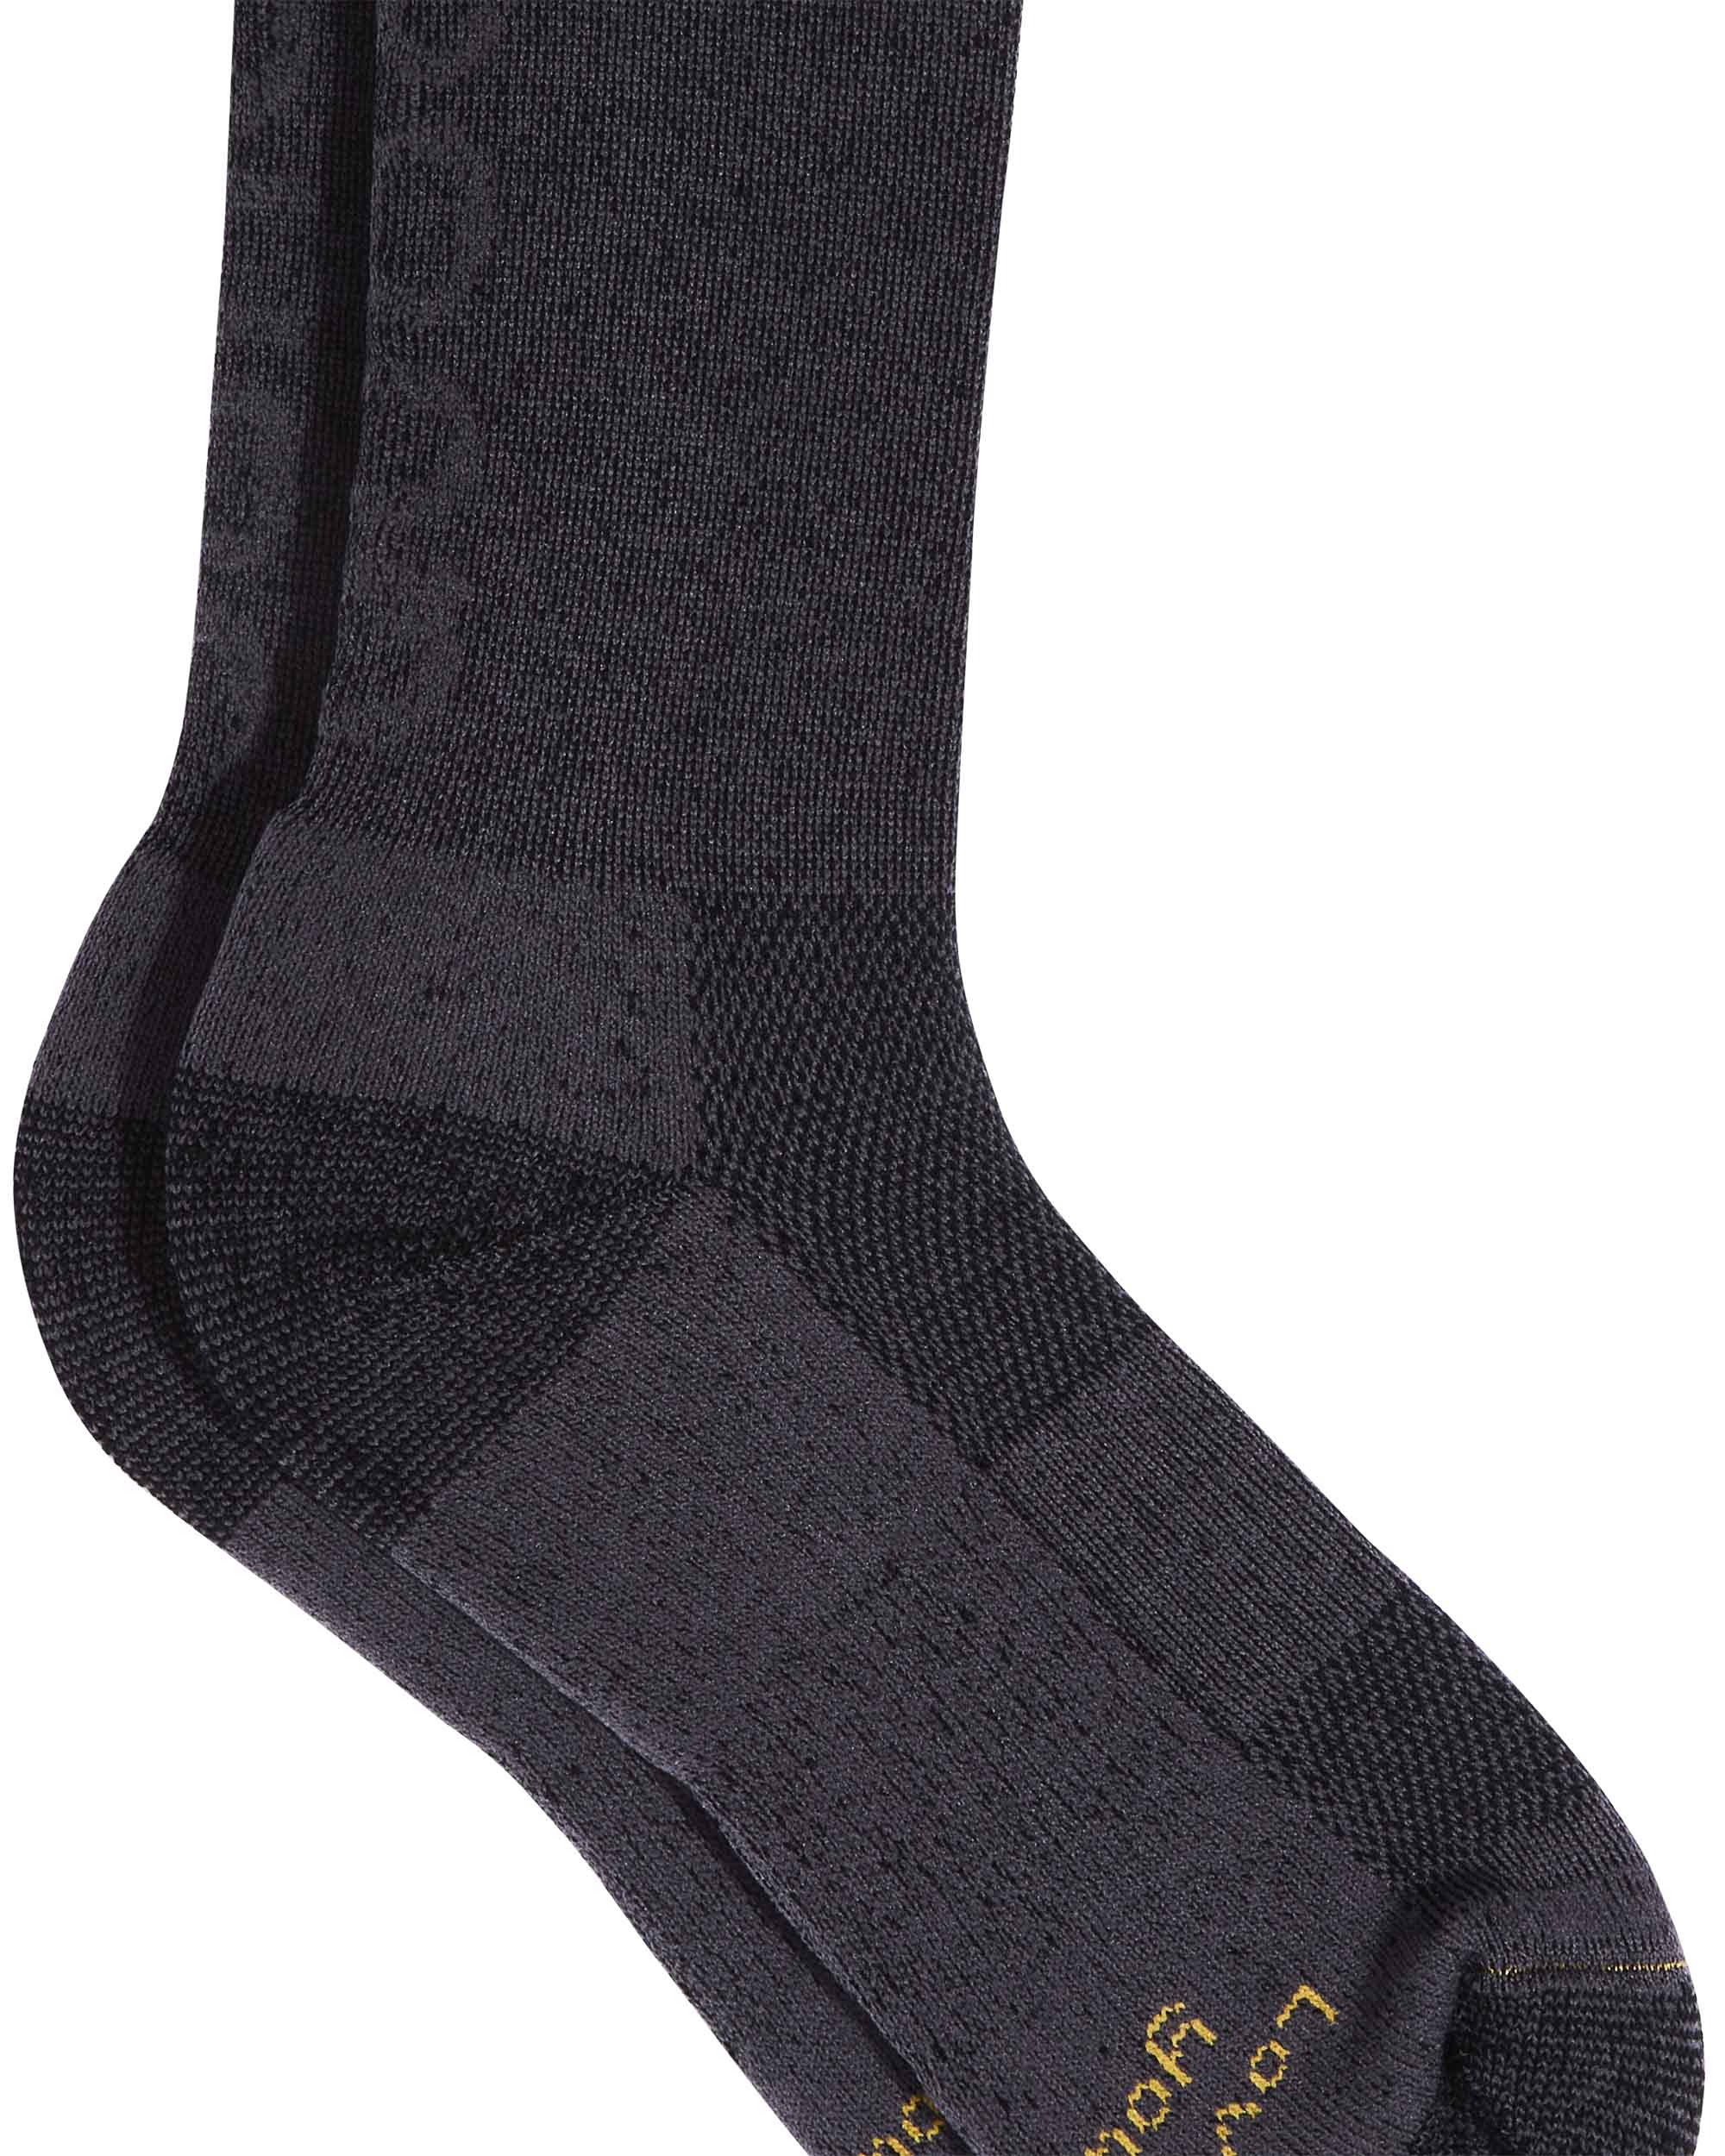 Merino Tech Wool Socks (3 Pairs)